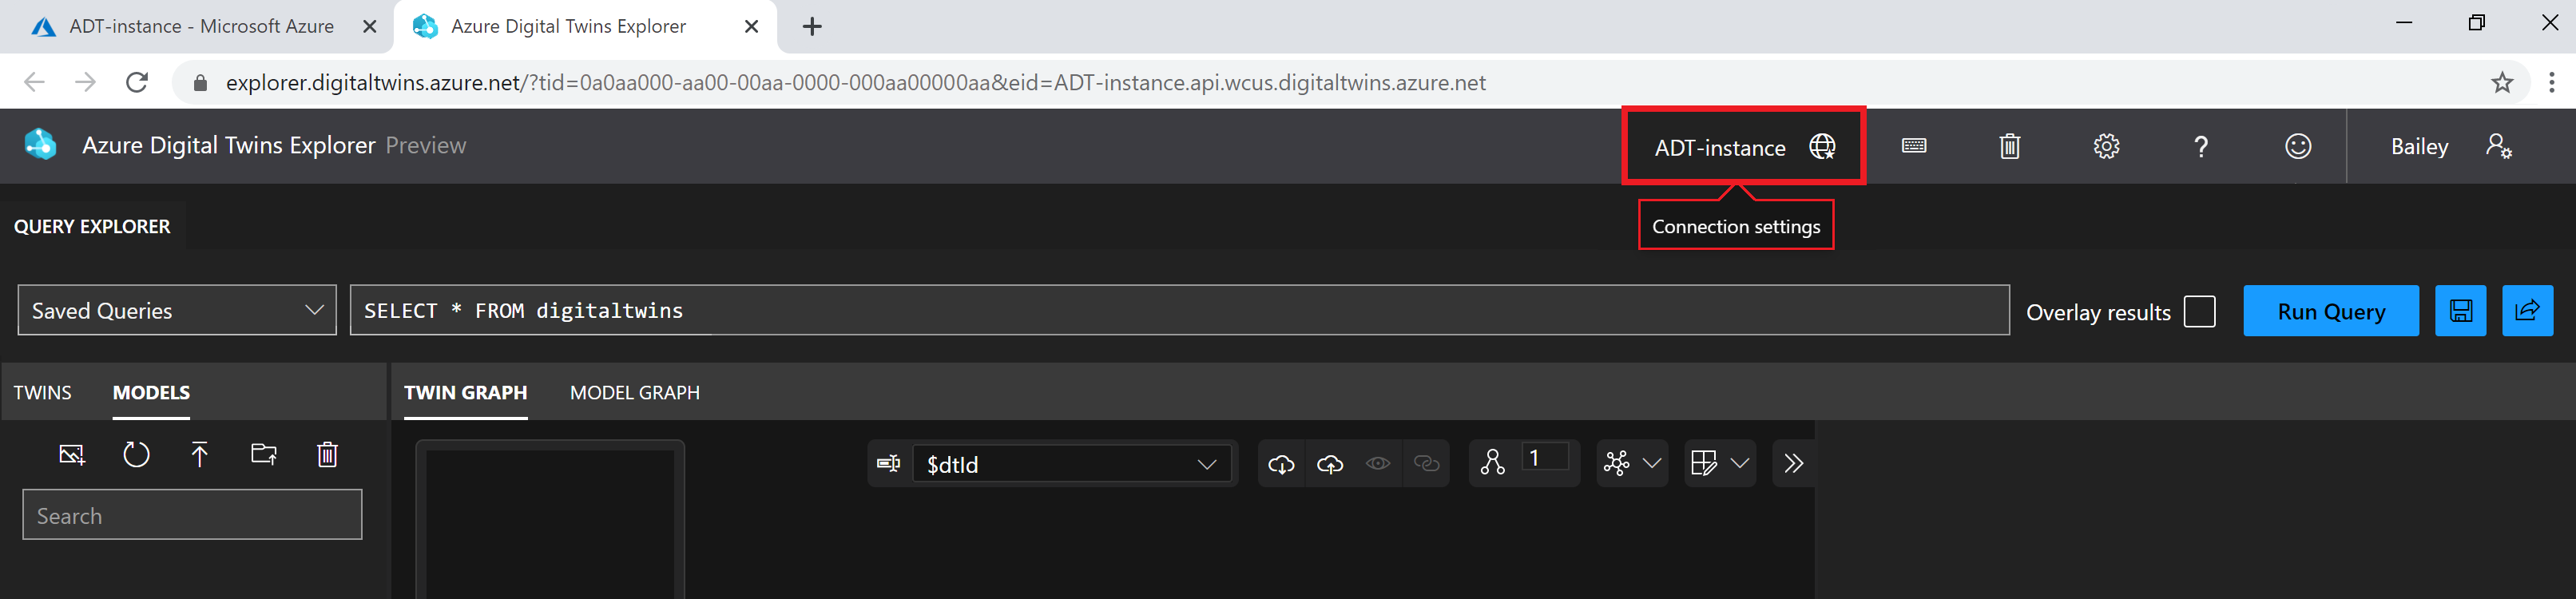 Captura de ecrã do Explorador do Azure Digital Twins. O nome da instância na barra de ferramentas superior está realçado.